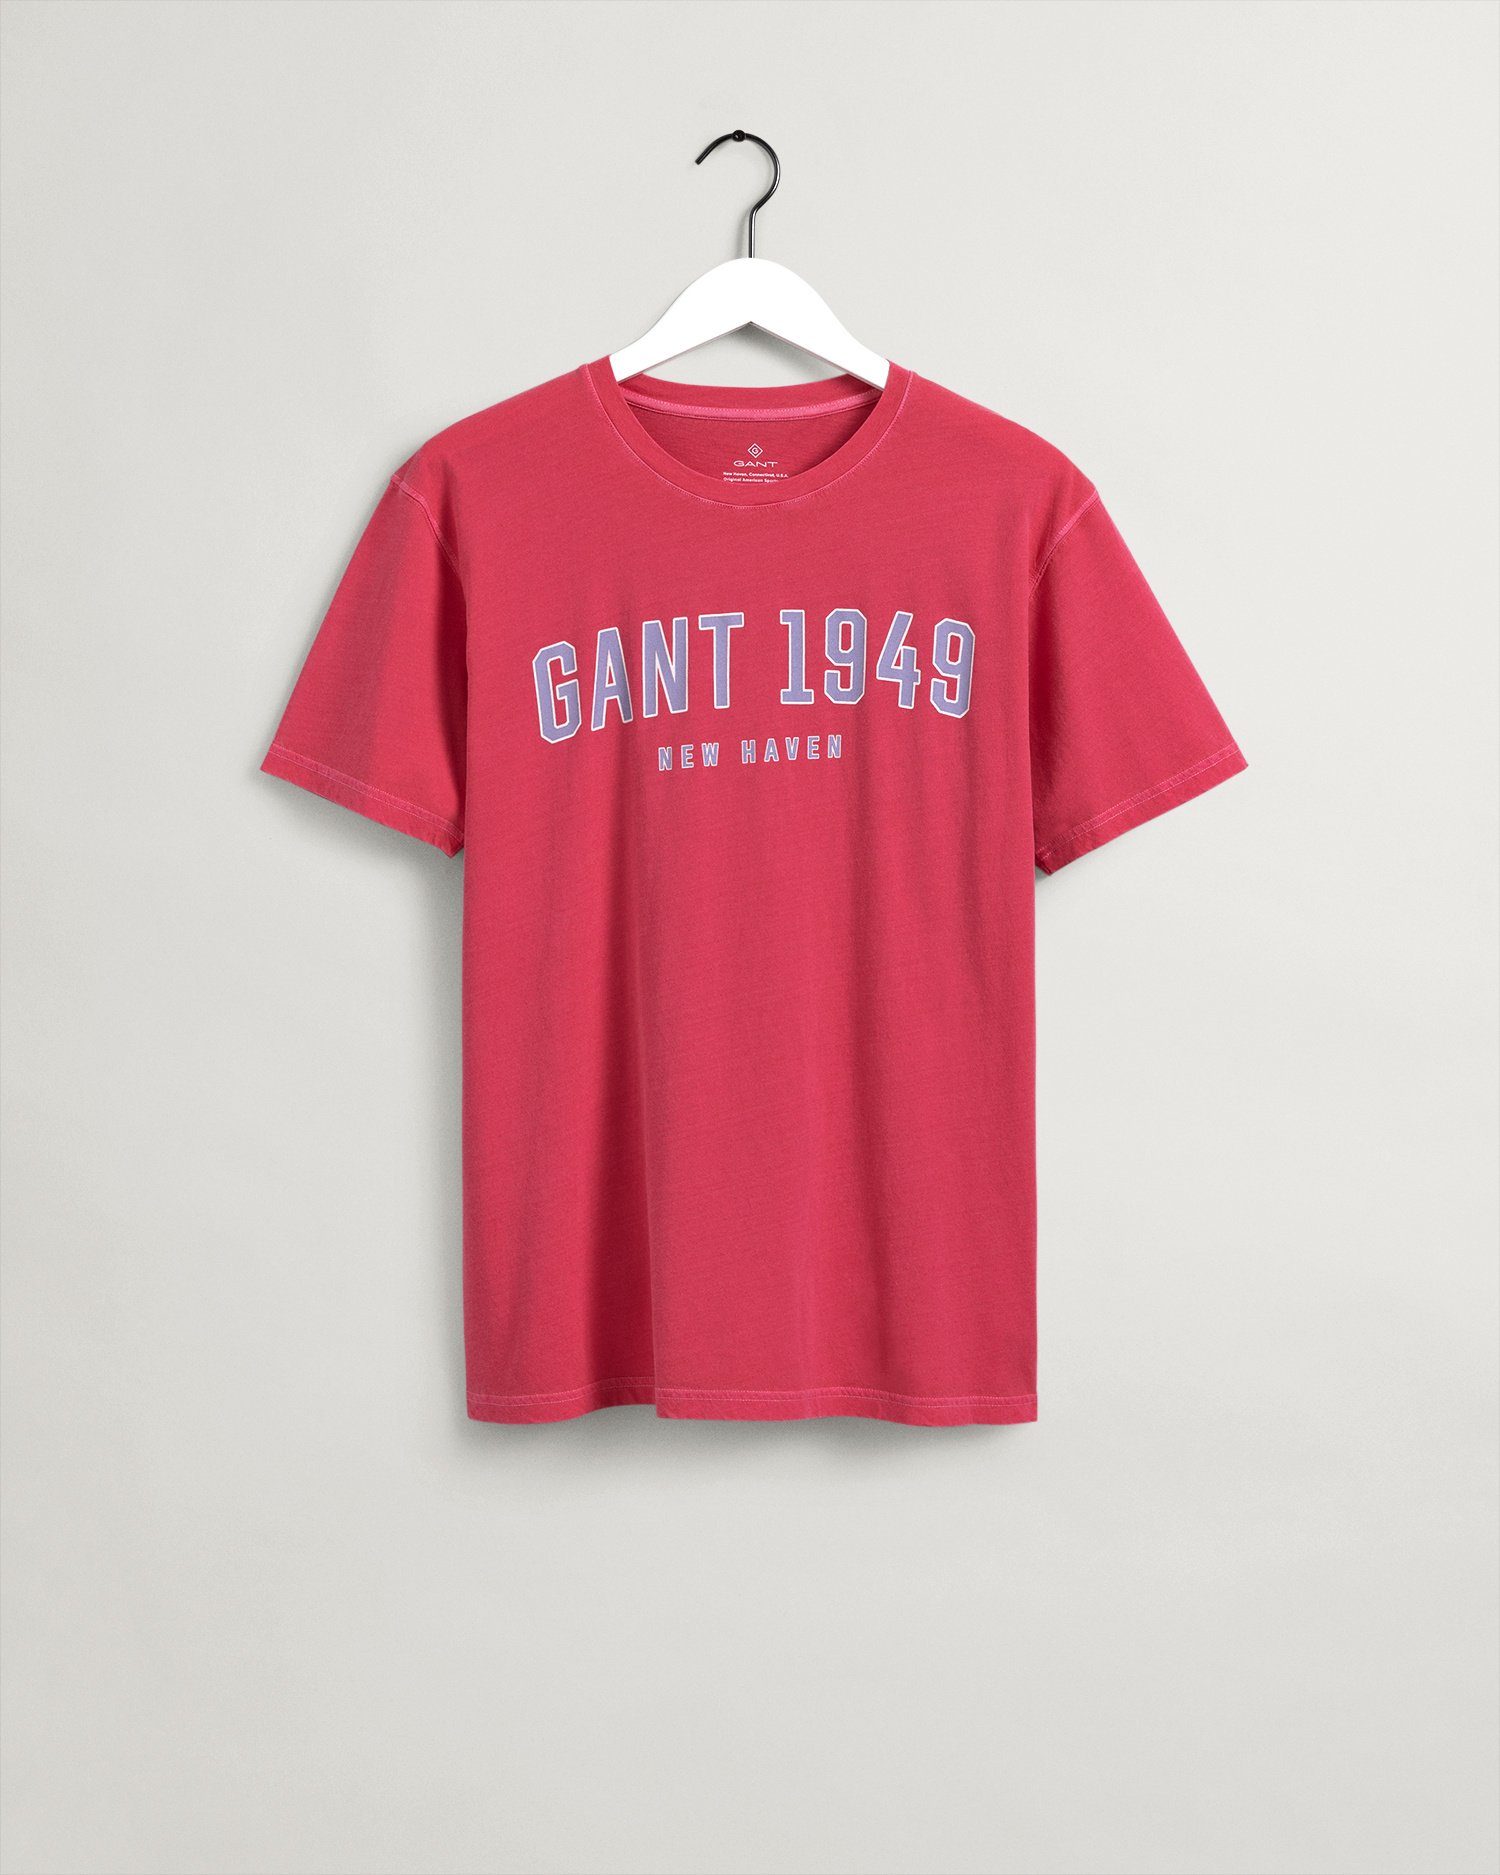 Verkaufskatalog Gant T-Shirt T-Shirt WATERMELON PINK 1949 652